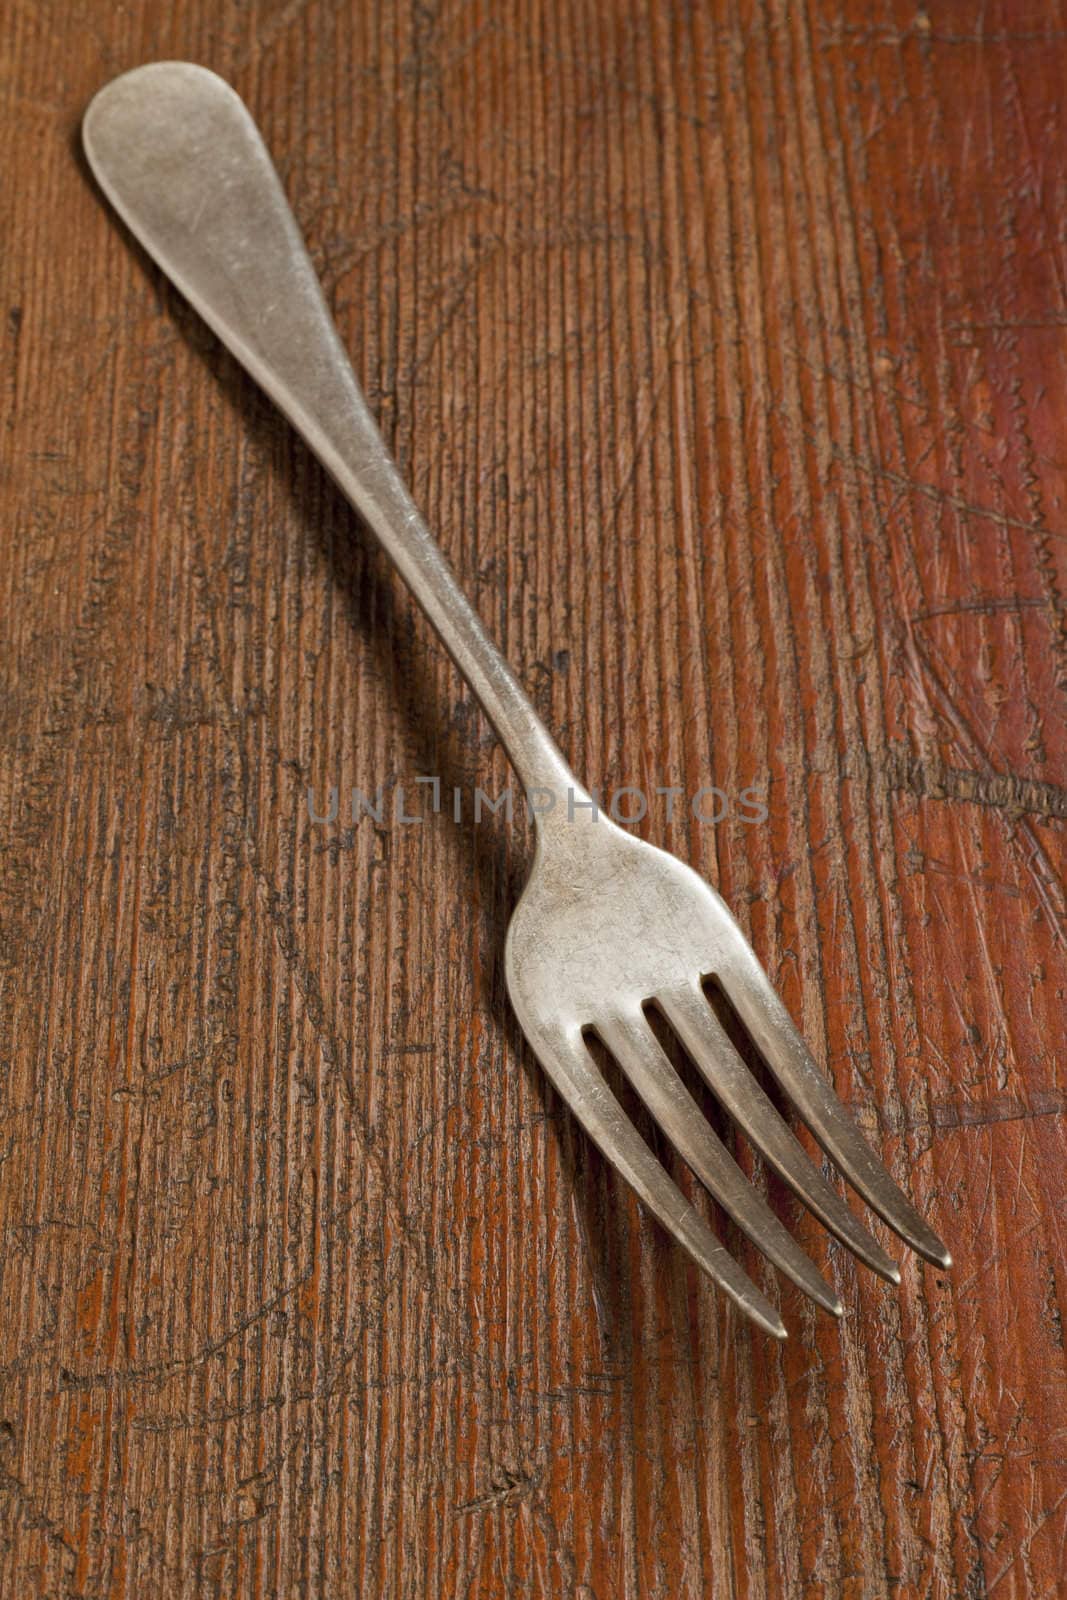 vintage fork by PixelsAway